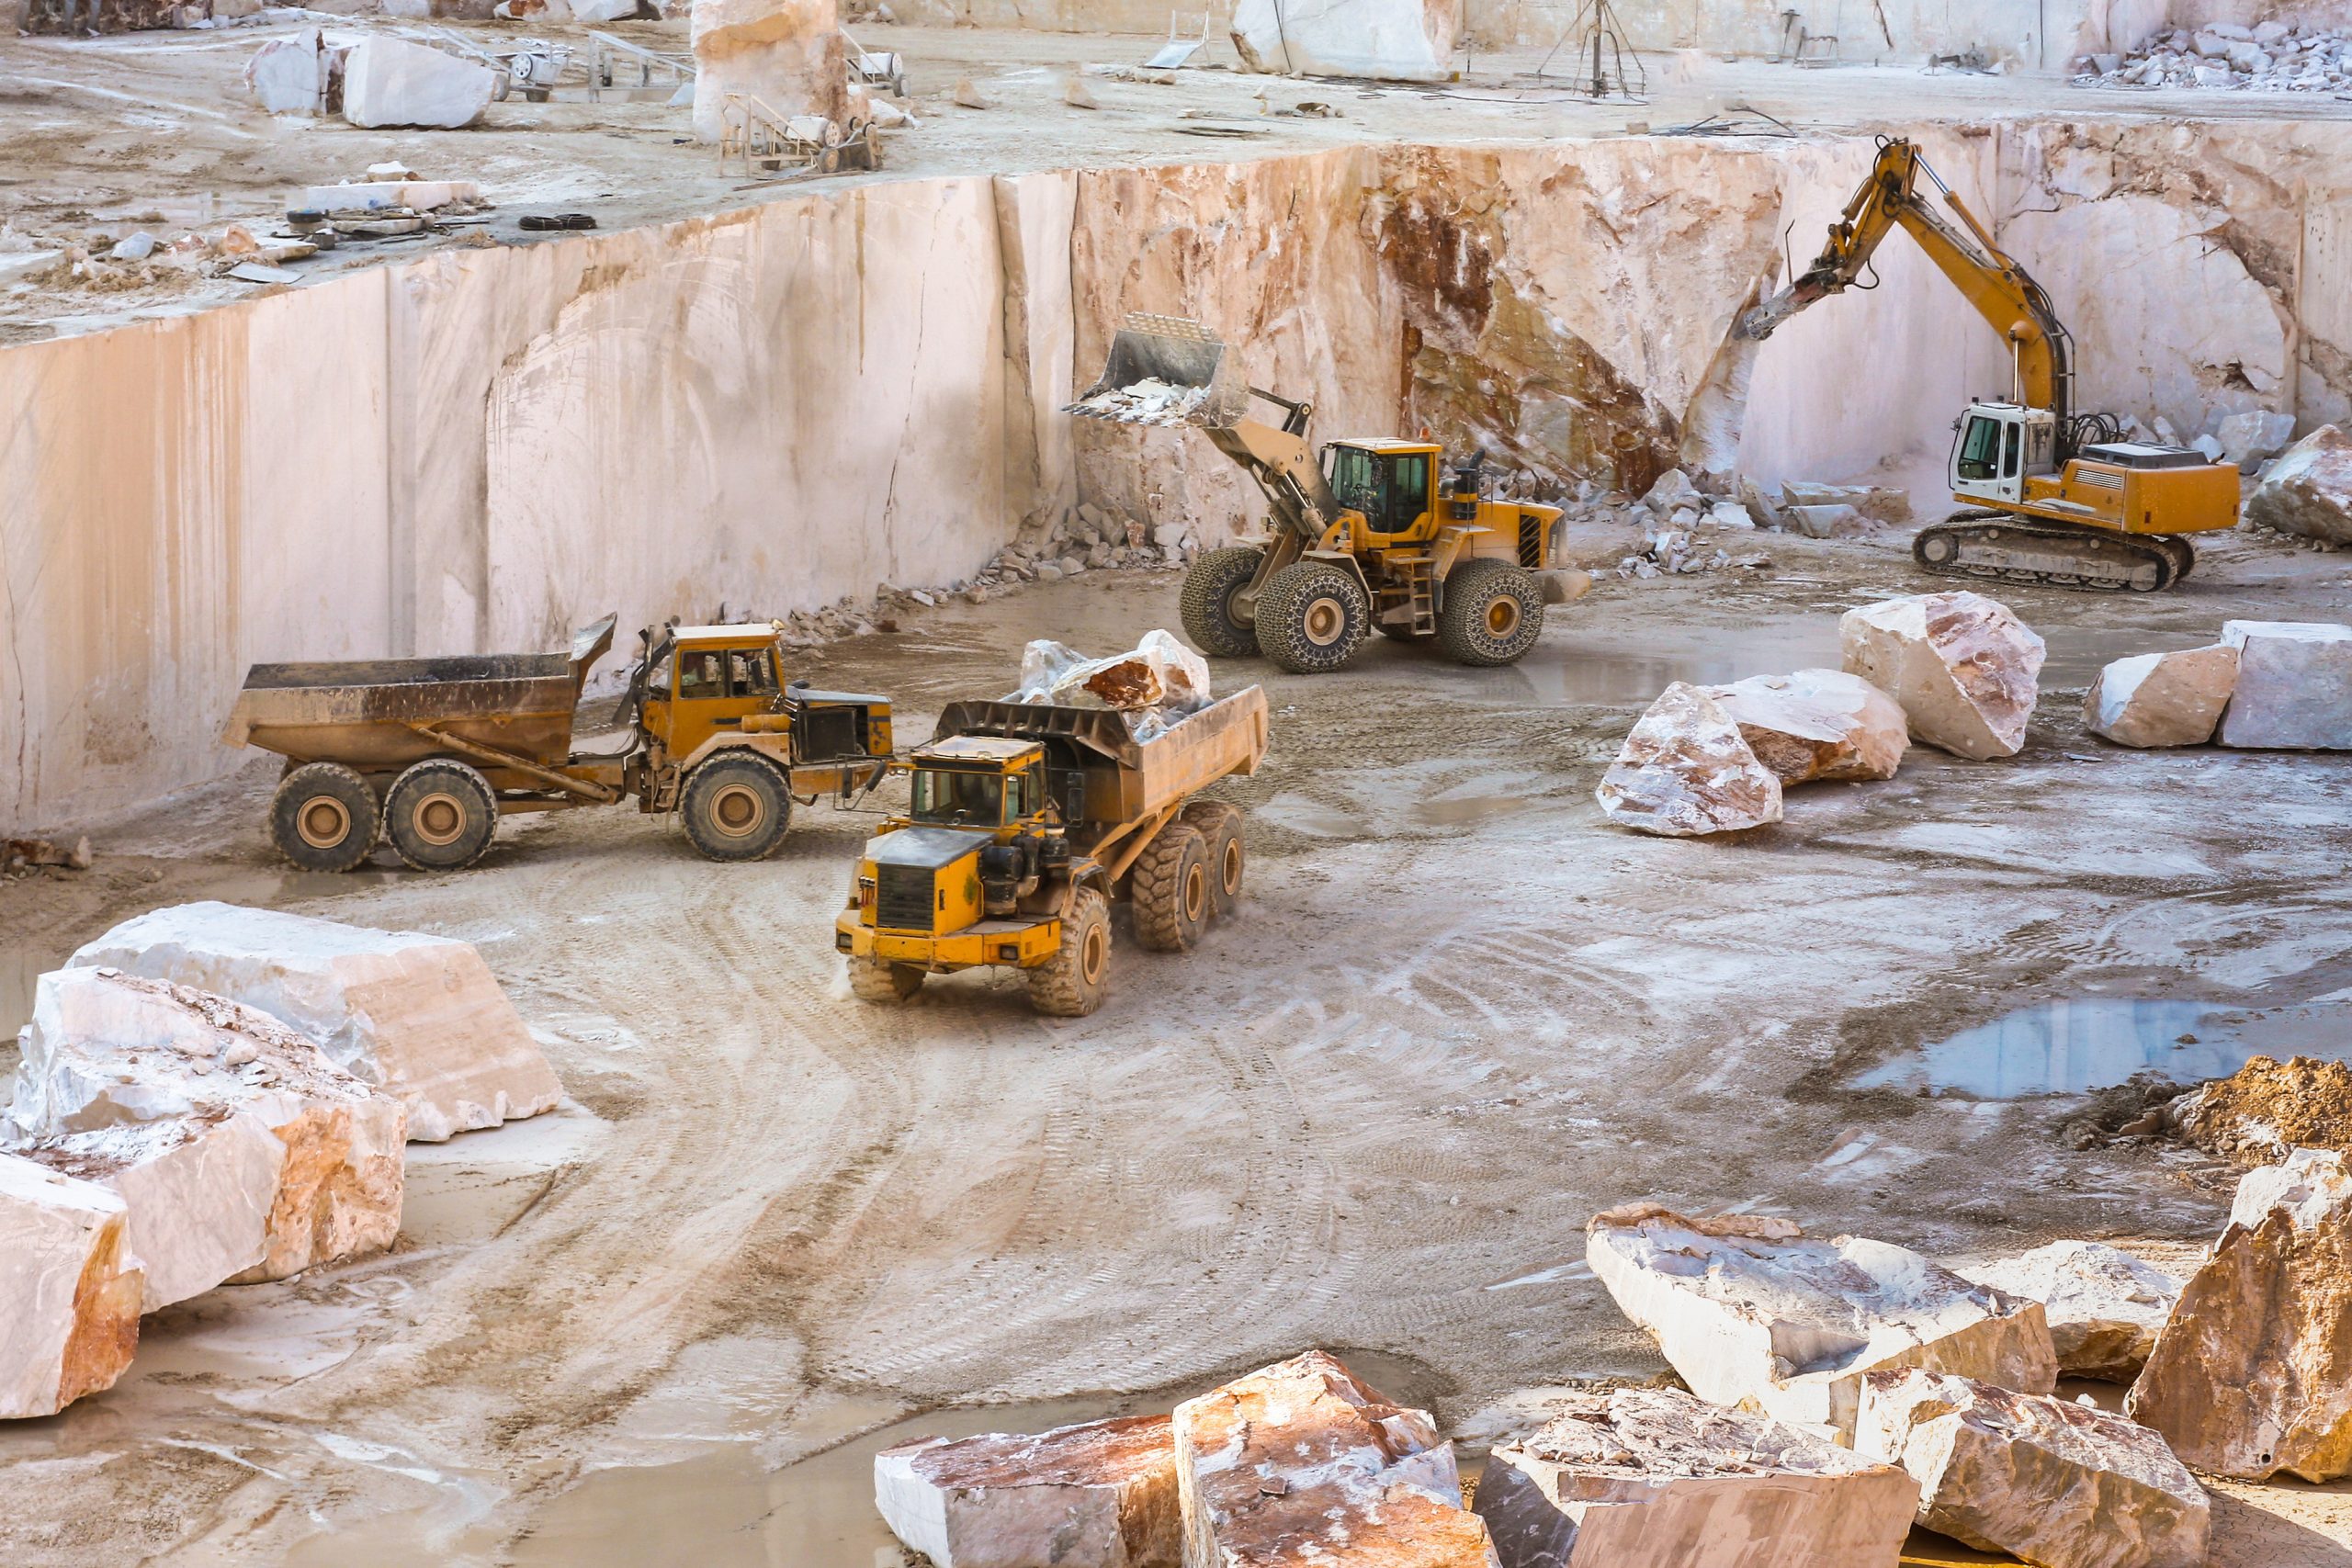 Devil's Copper - Business Interruption Mining Loss involving nickel